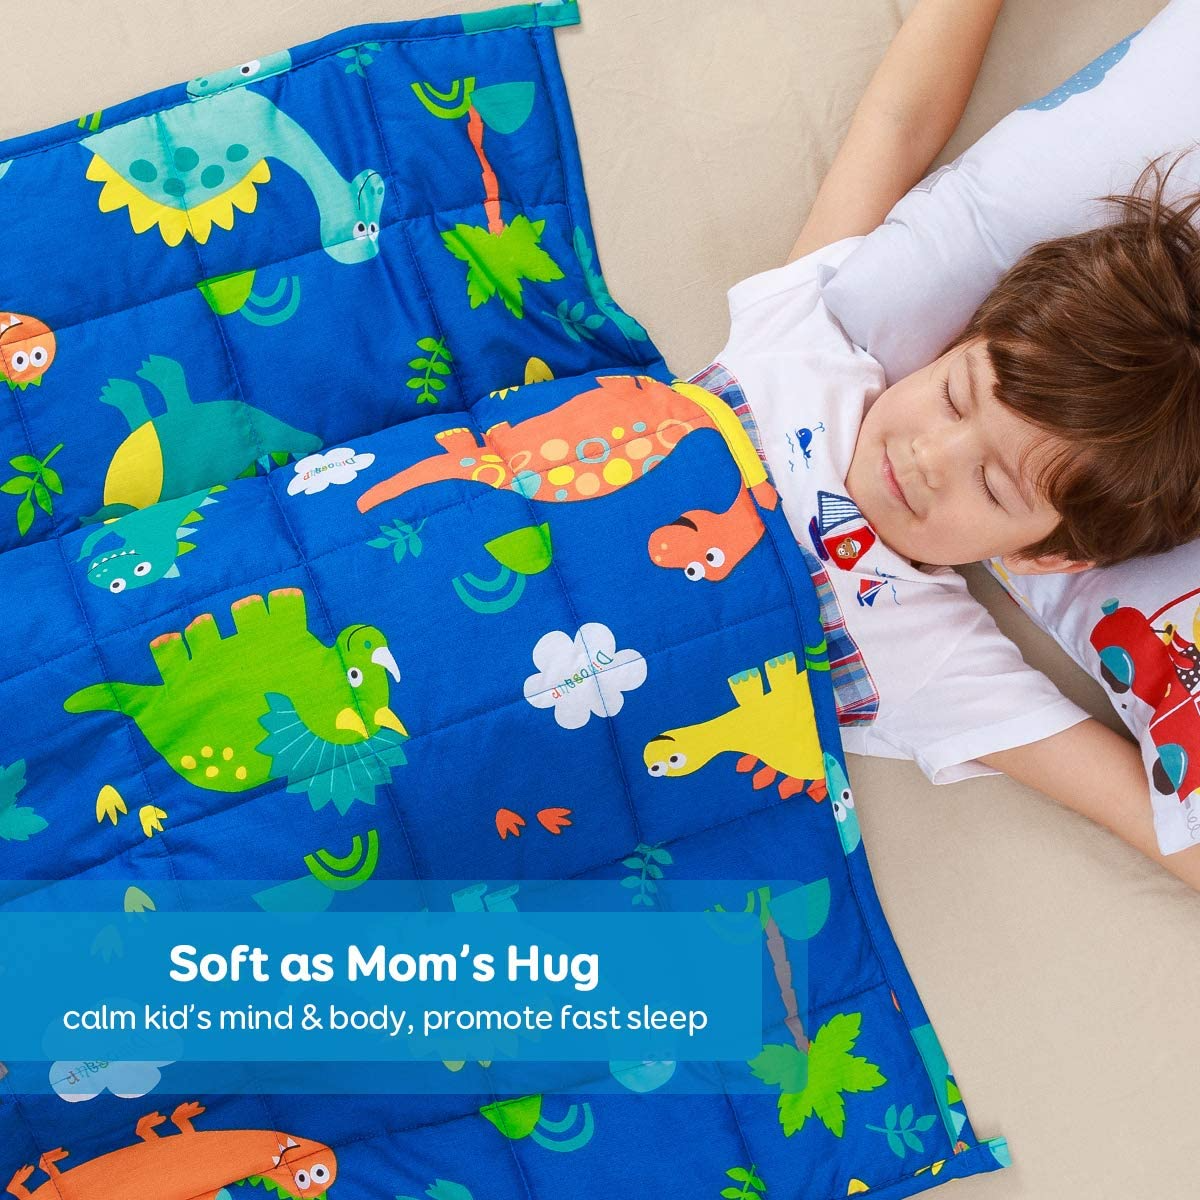 Sivio  Cobertor pesado para crianças, 1,4 kg, 90x120 cm, cobertor pesado 100% algodão natural para crianças e adolescentes, contas de vidro seguras, dinossauro azul